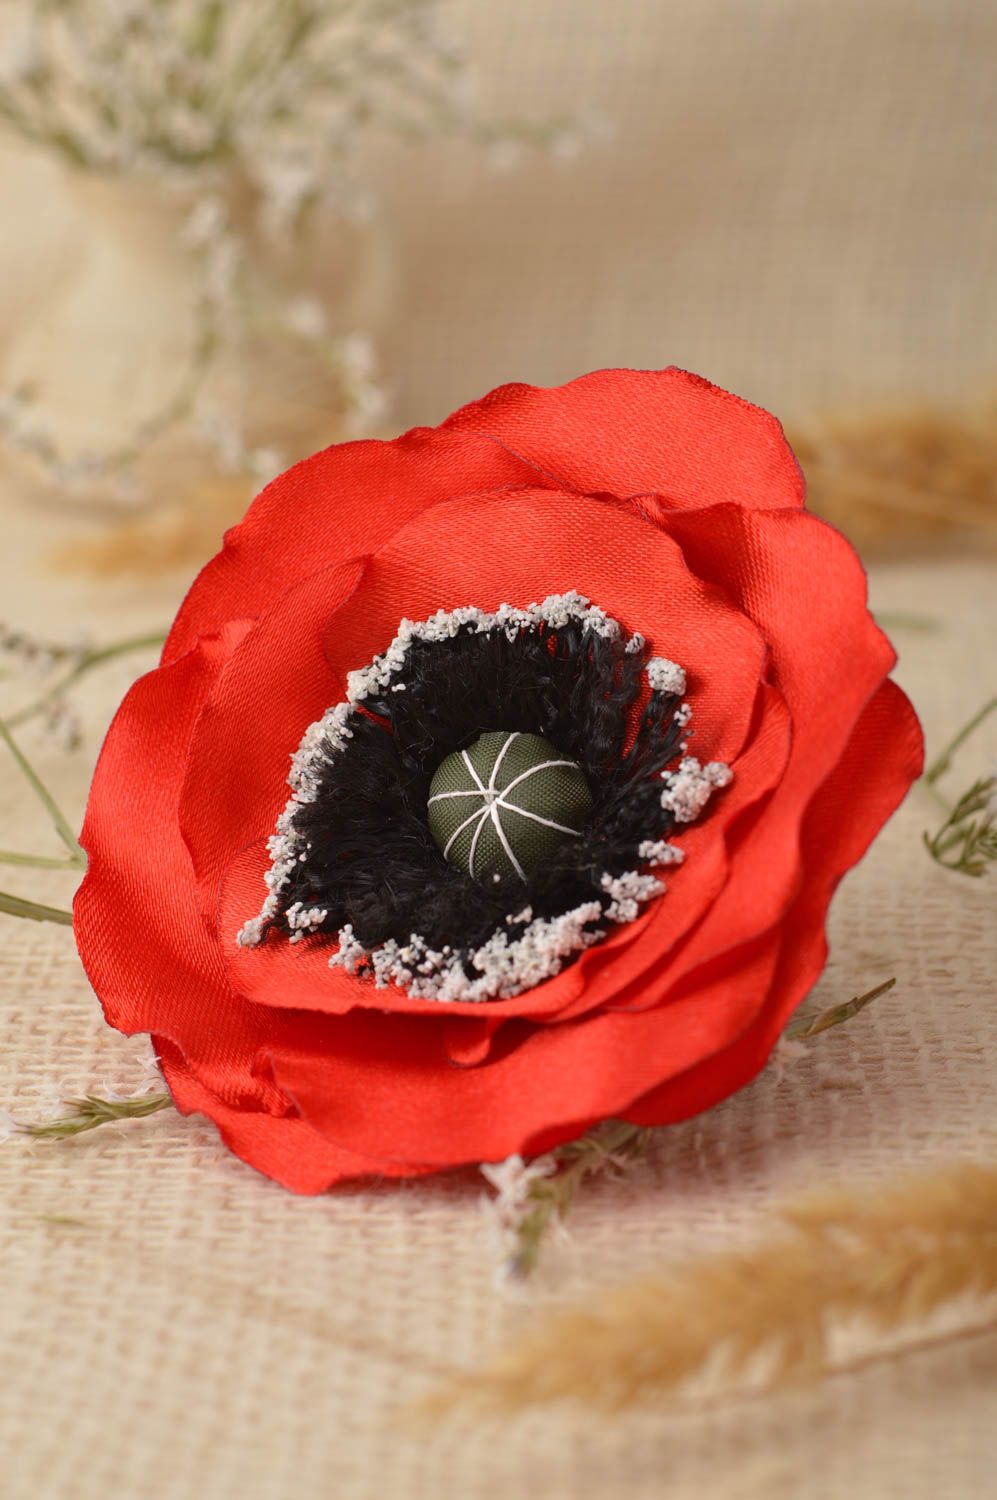 Handmade Schmuck Brosche Haarspange Blume Haar Accessoires üppige rote Mohnblume foto 1